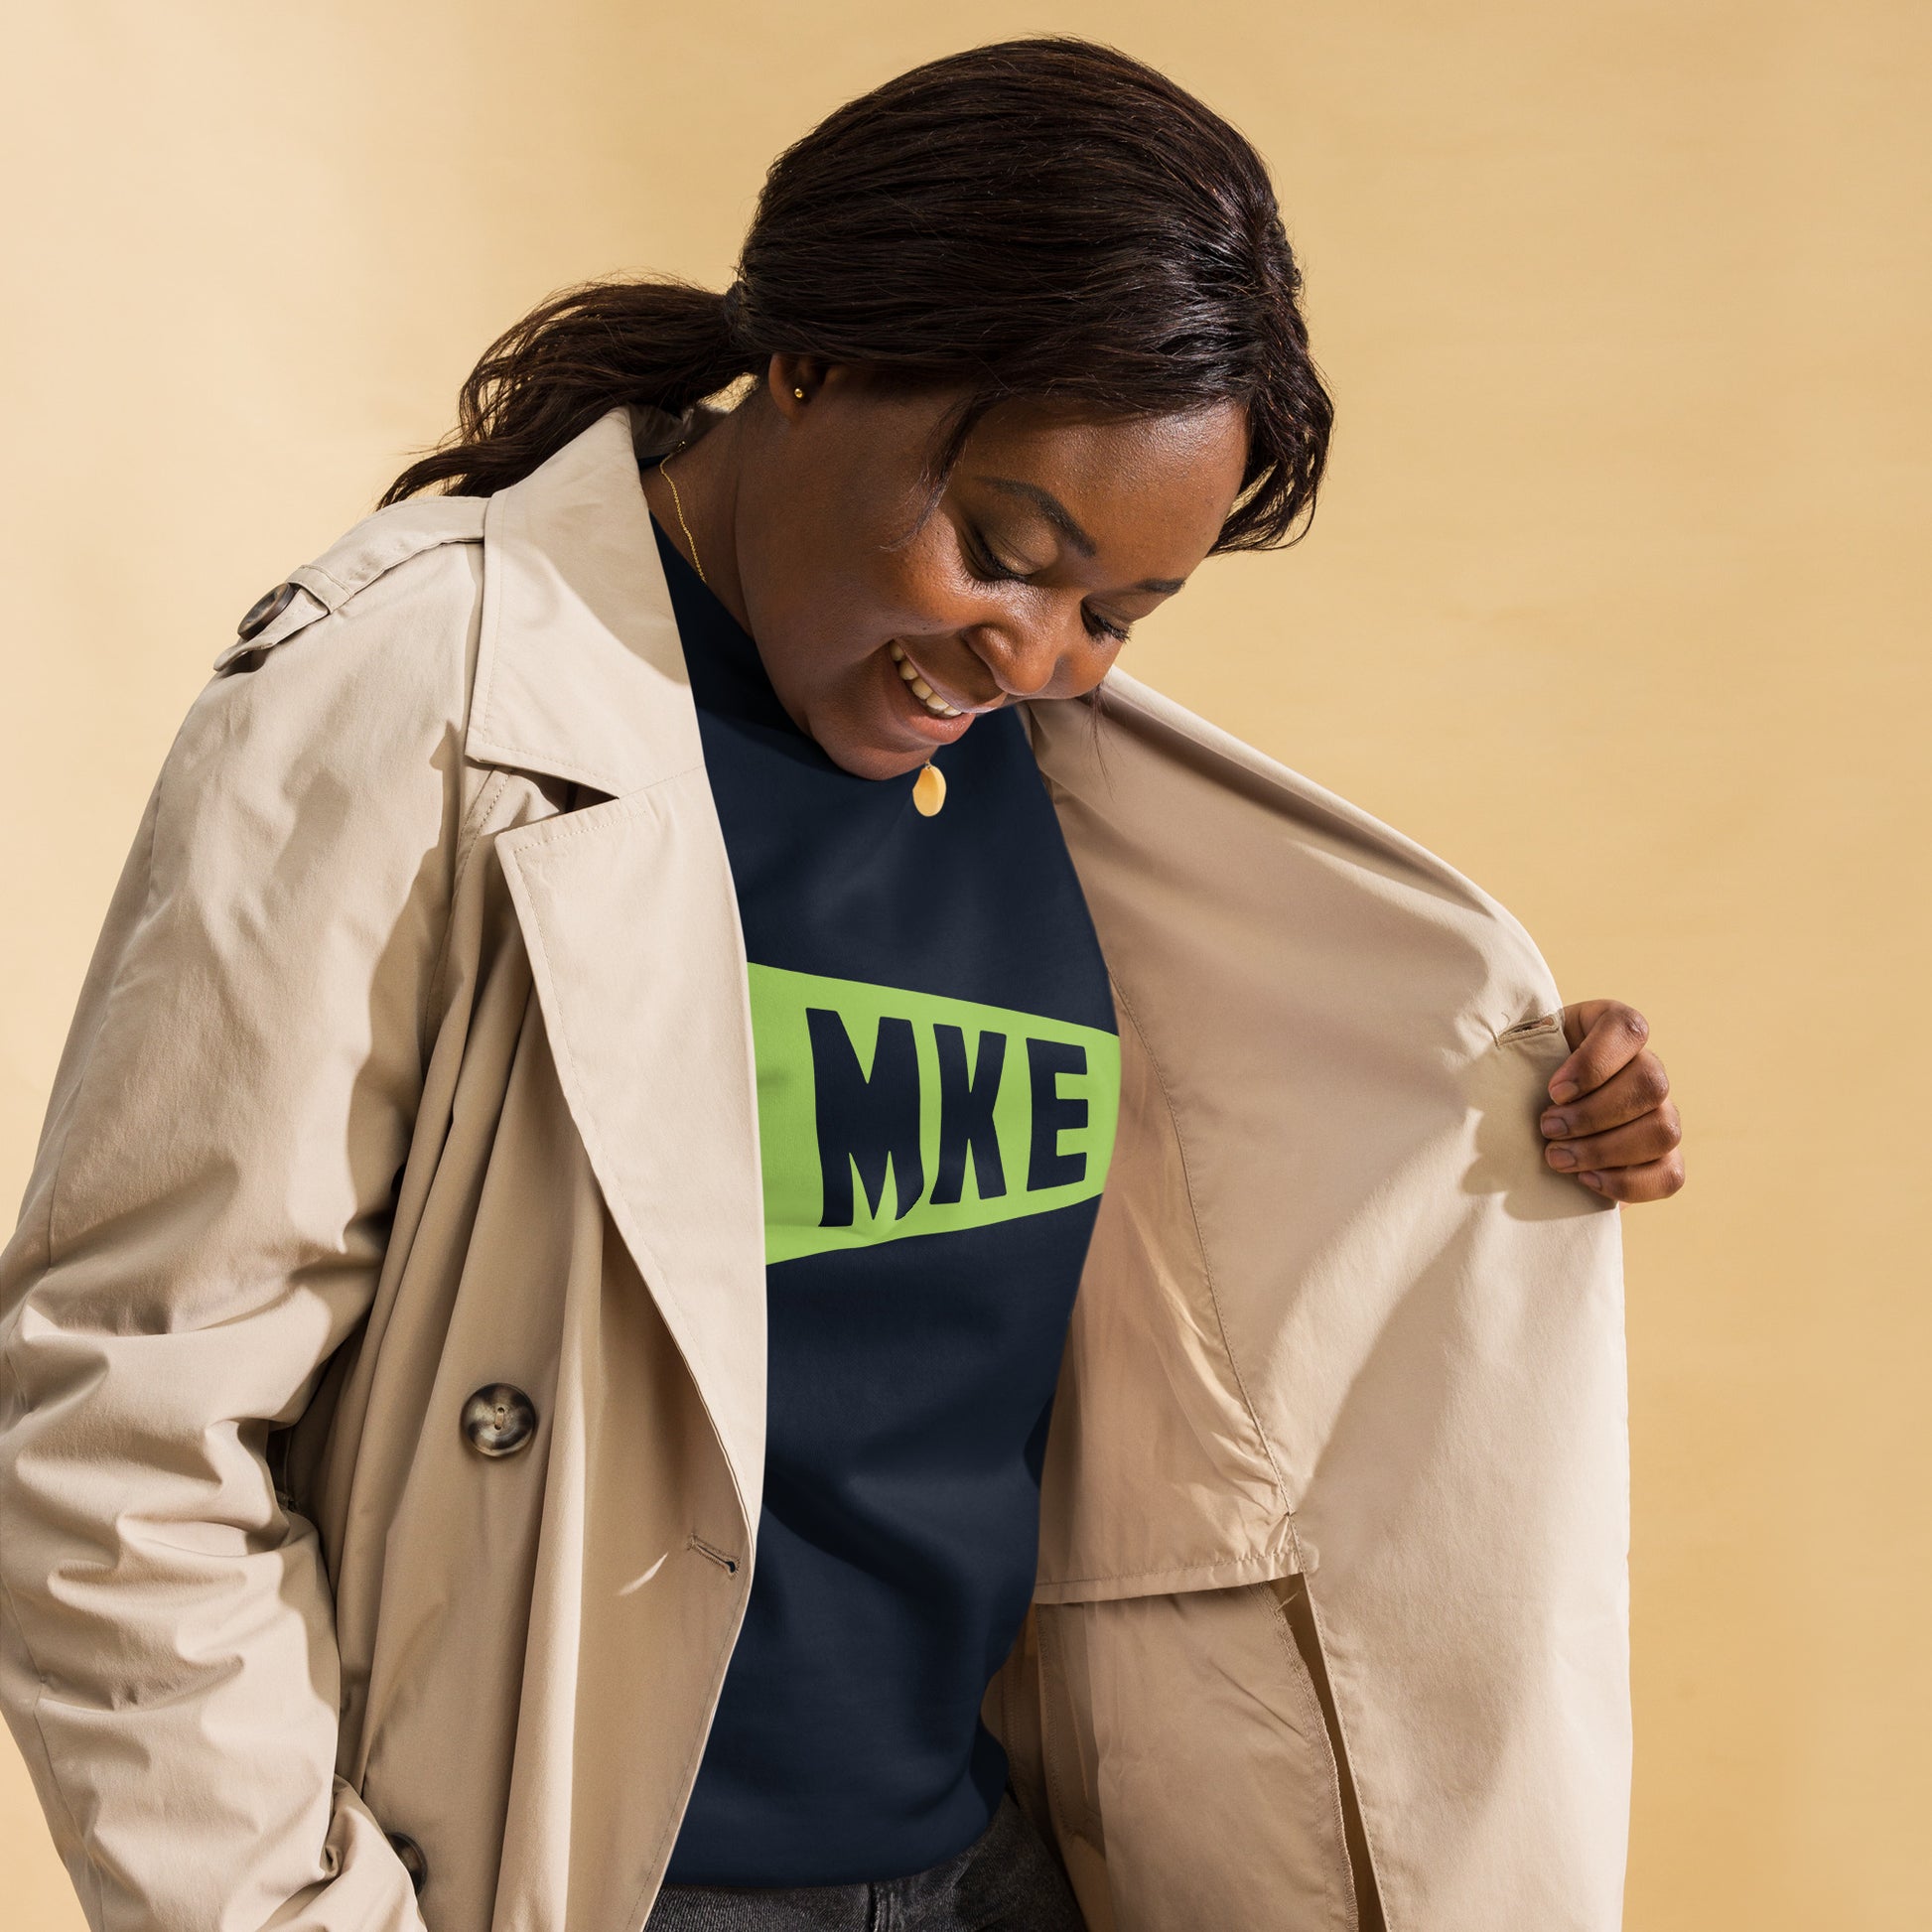 Airport Code Premium Sweatshirt - Green Graphic • MKE Milwaukee • YHM Designs - Image 05